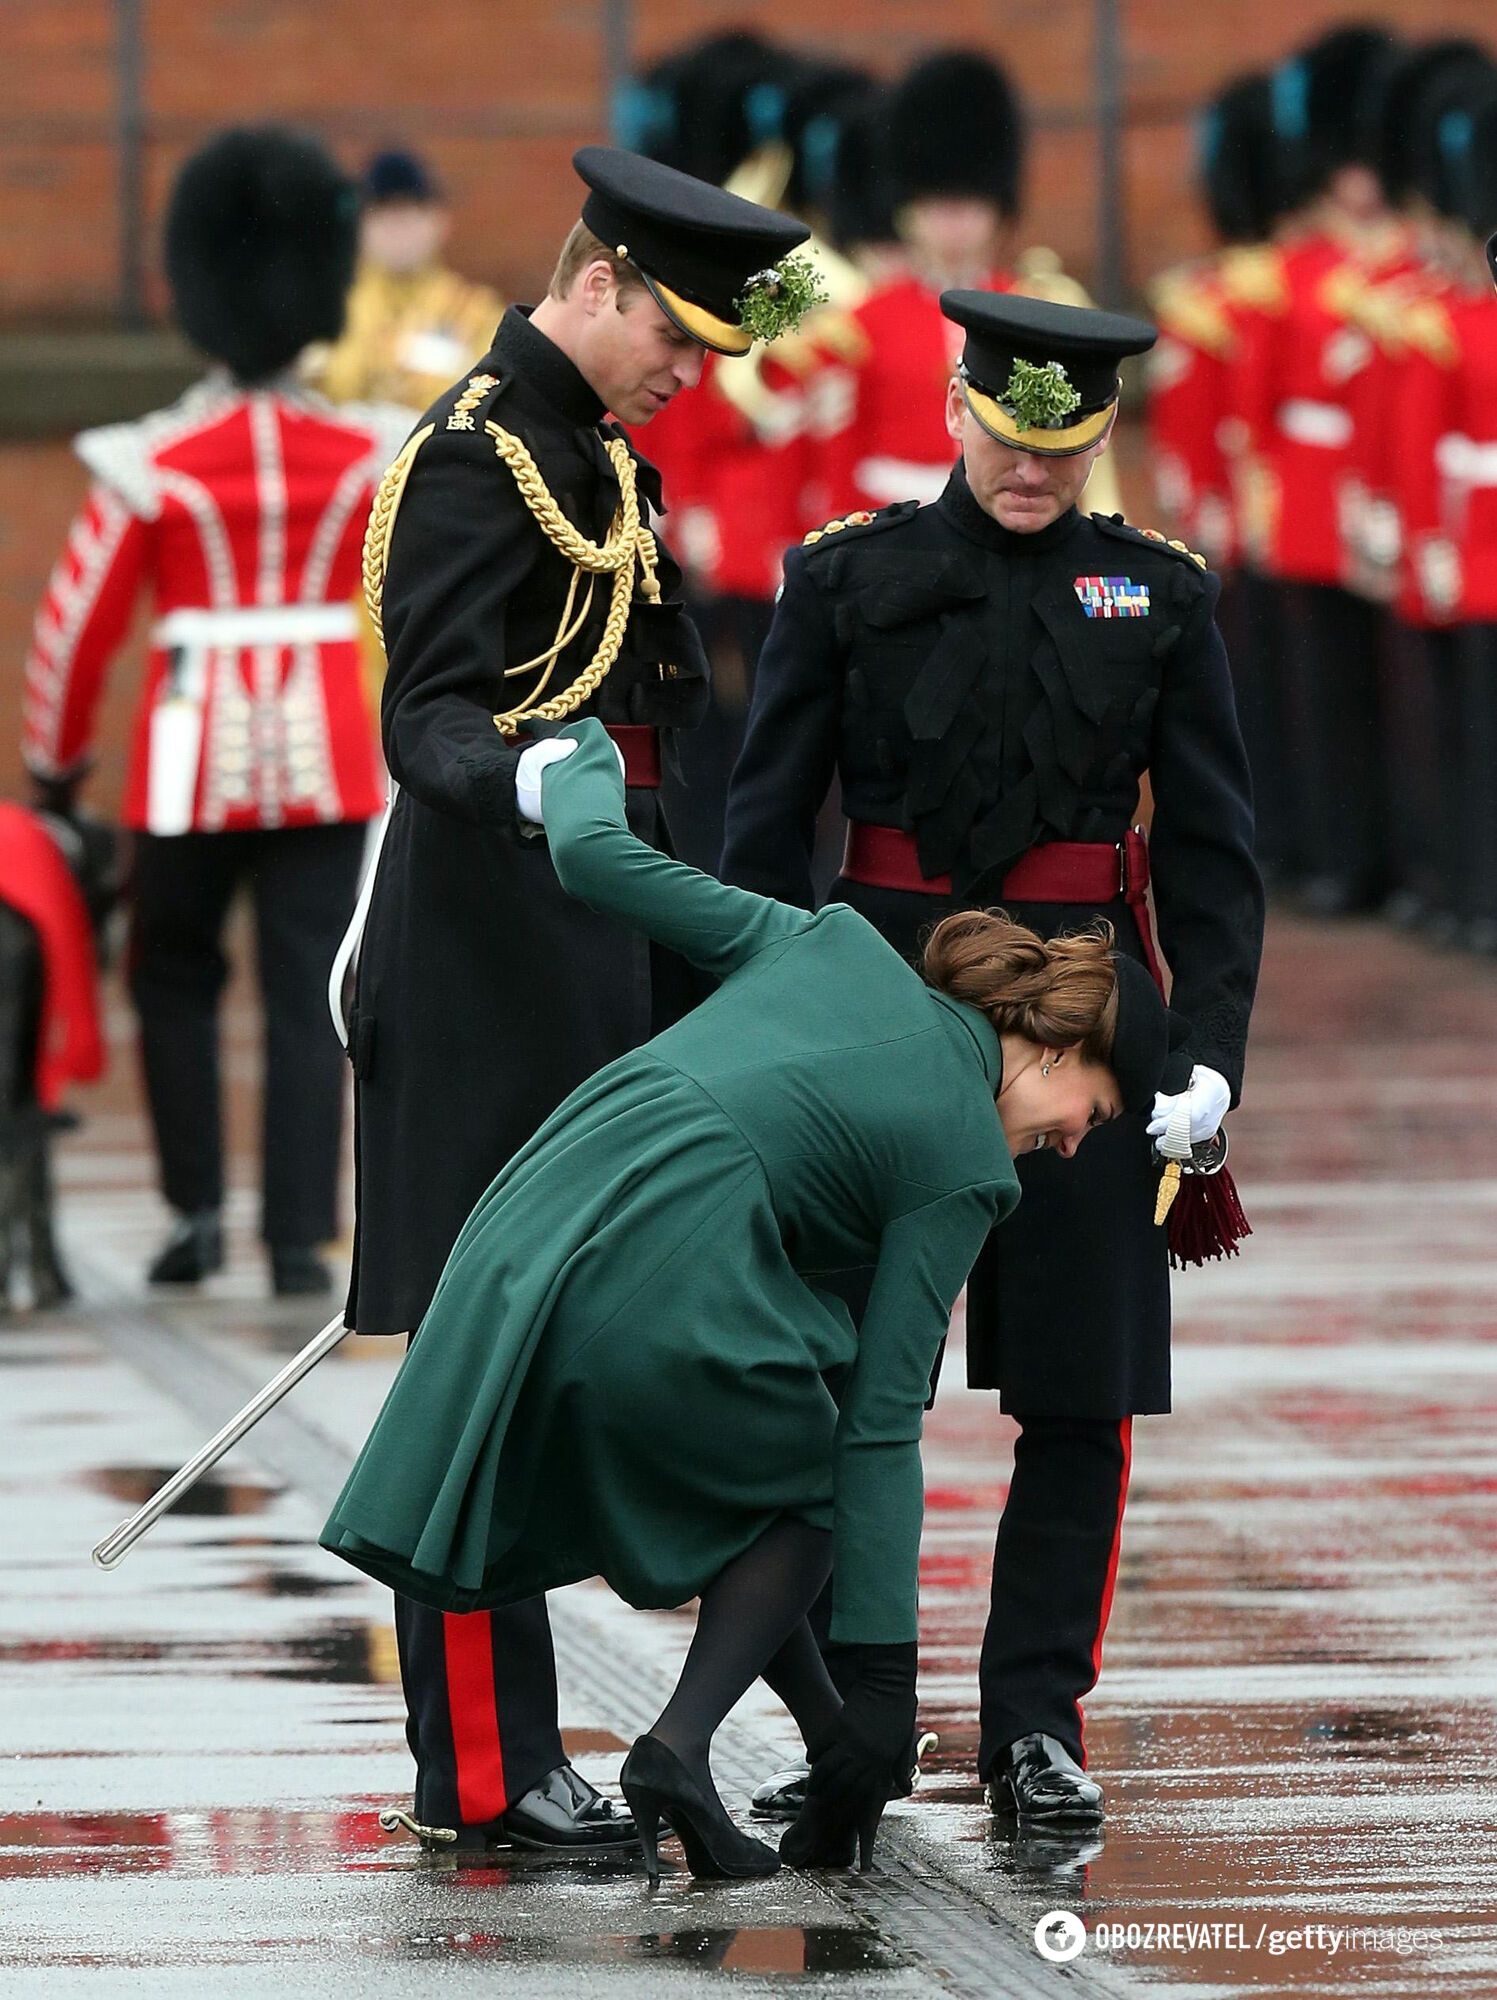 Książę Harry pokazuje język, a król Karol pozuje ze Shrekiem. 20 zabawnych zdjęć rodziny królewskiej